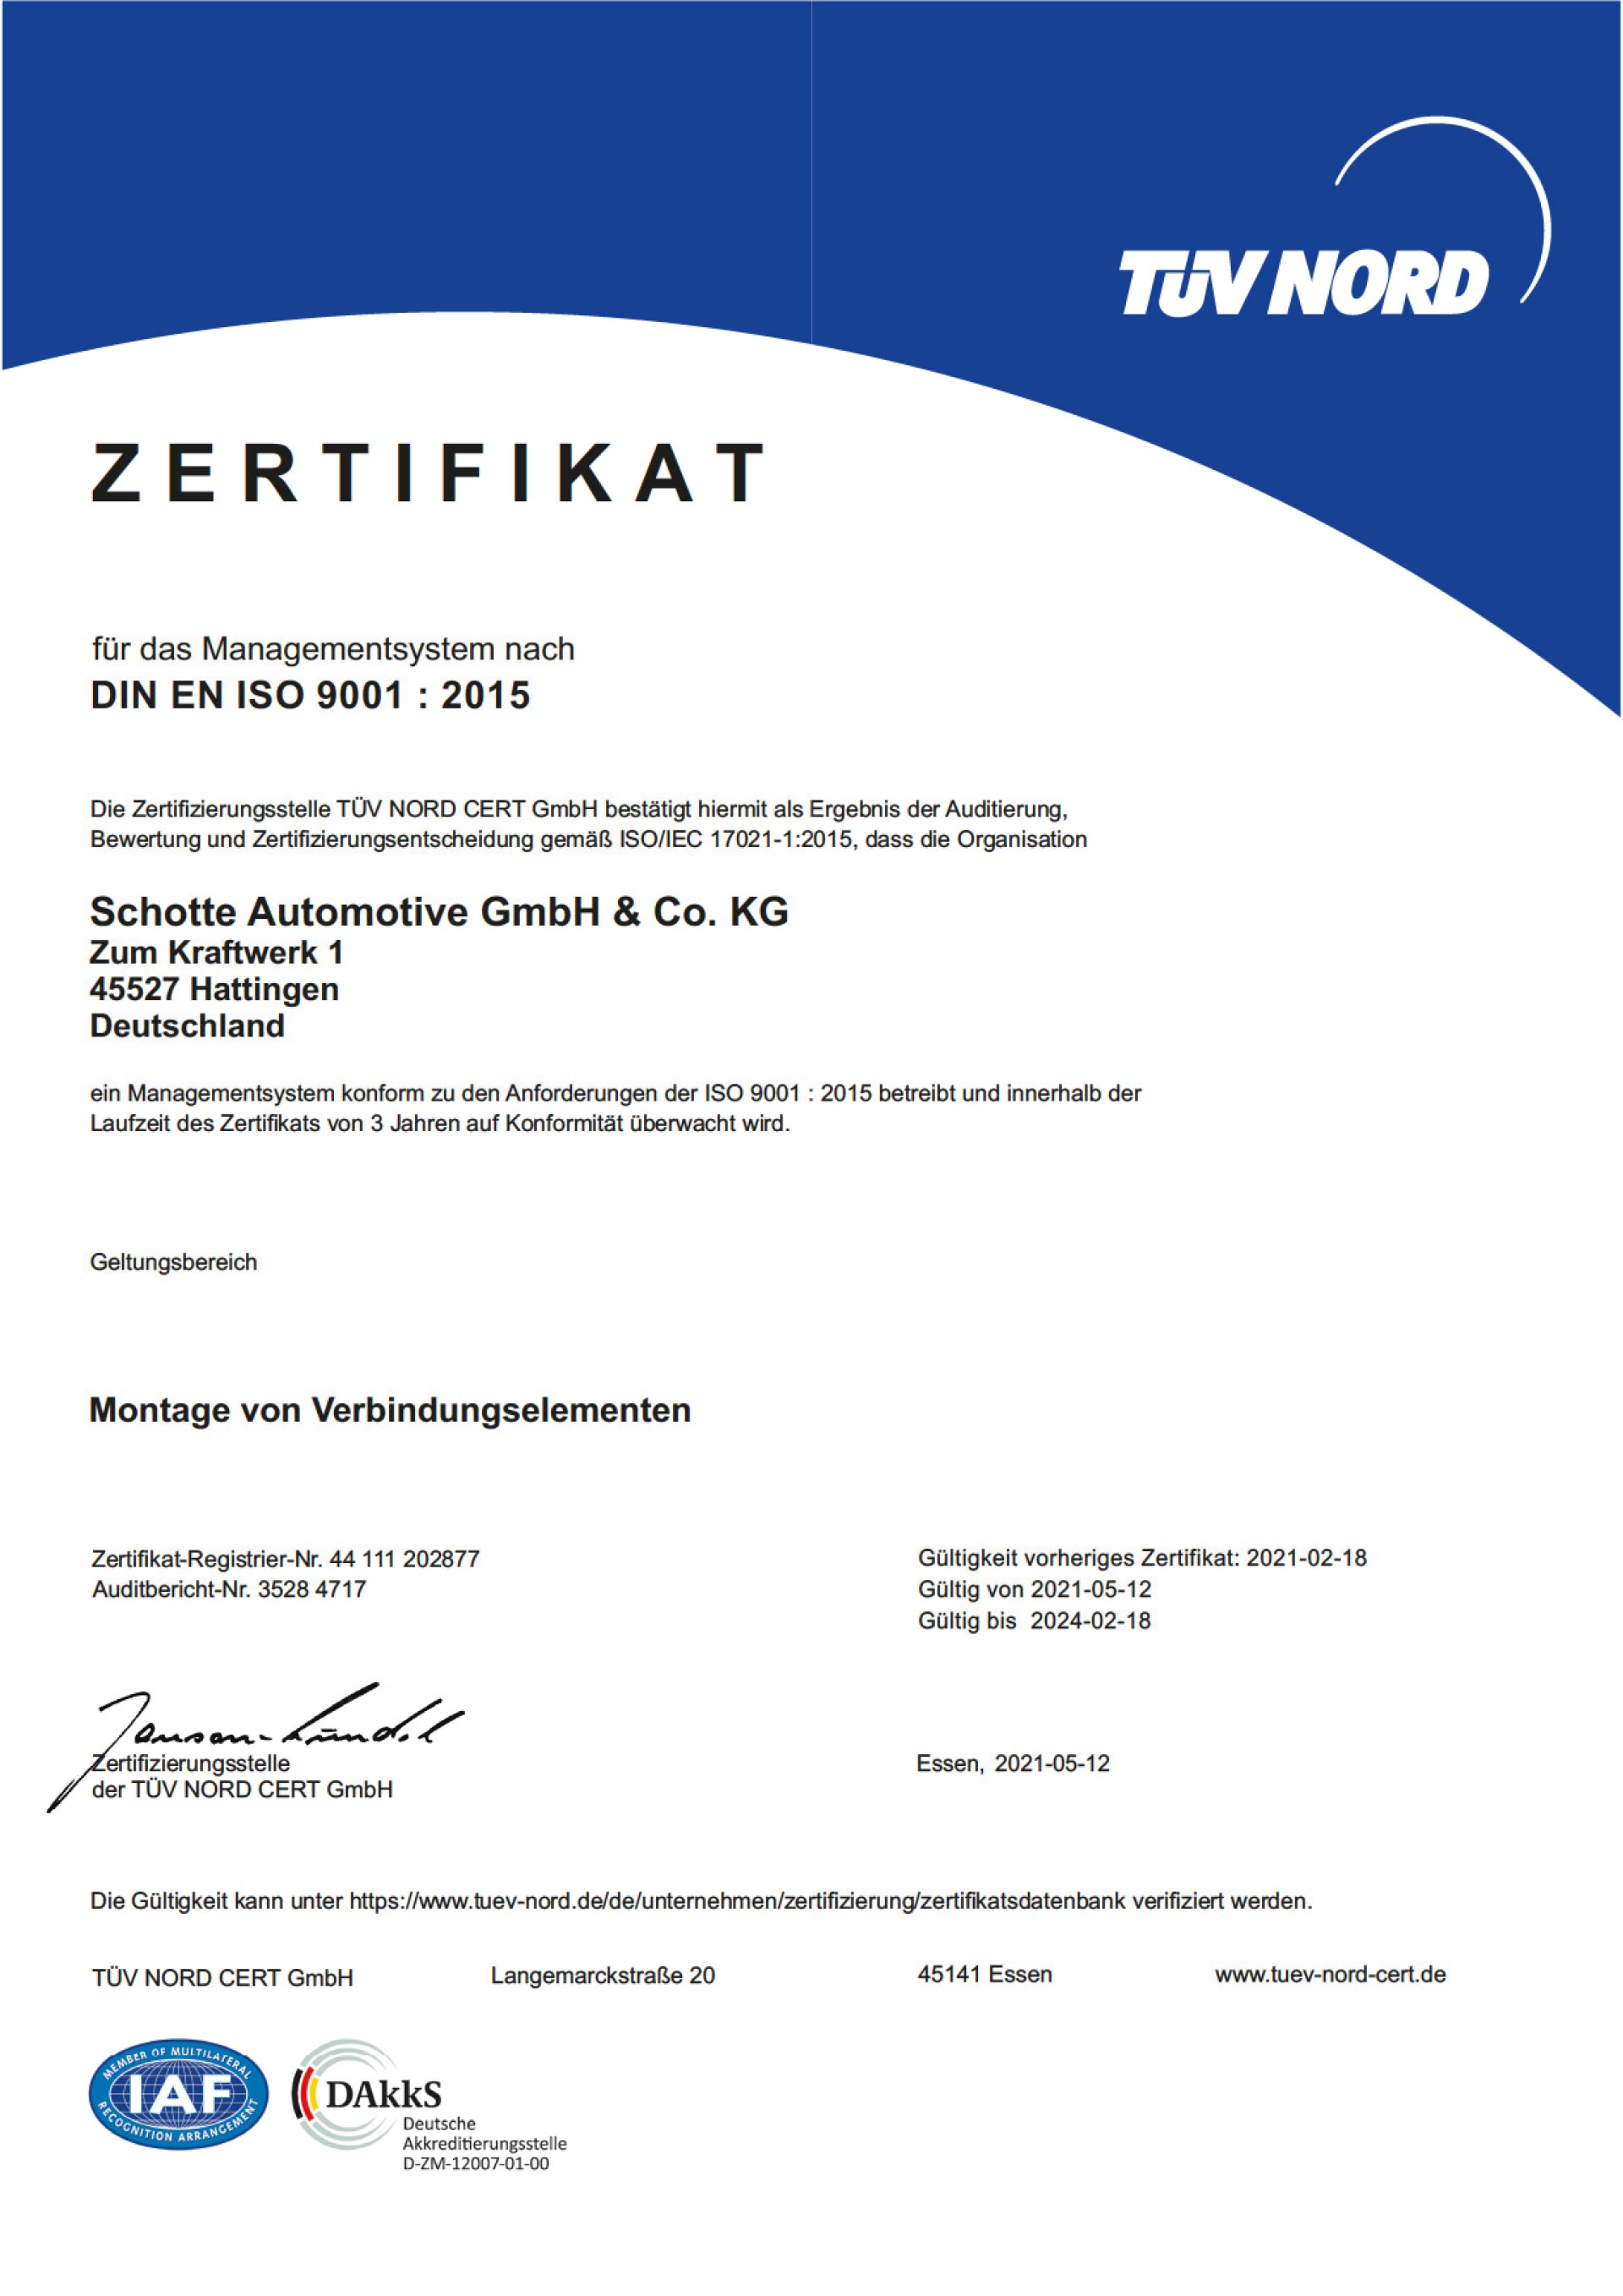 Zertifikat_ISO_9001-1-schotte-automotive